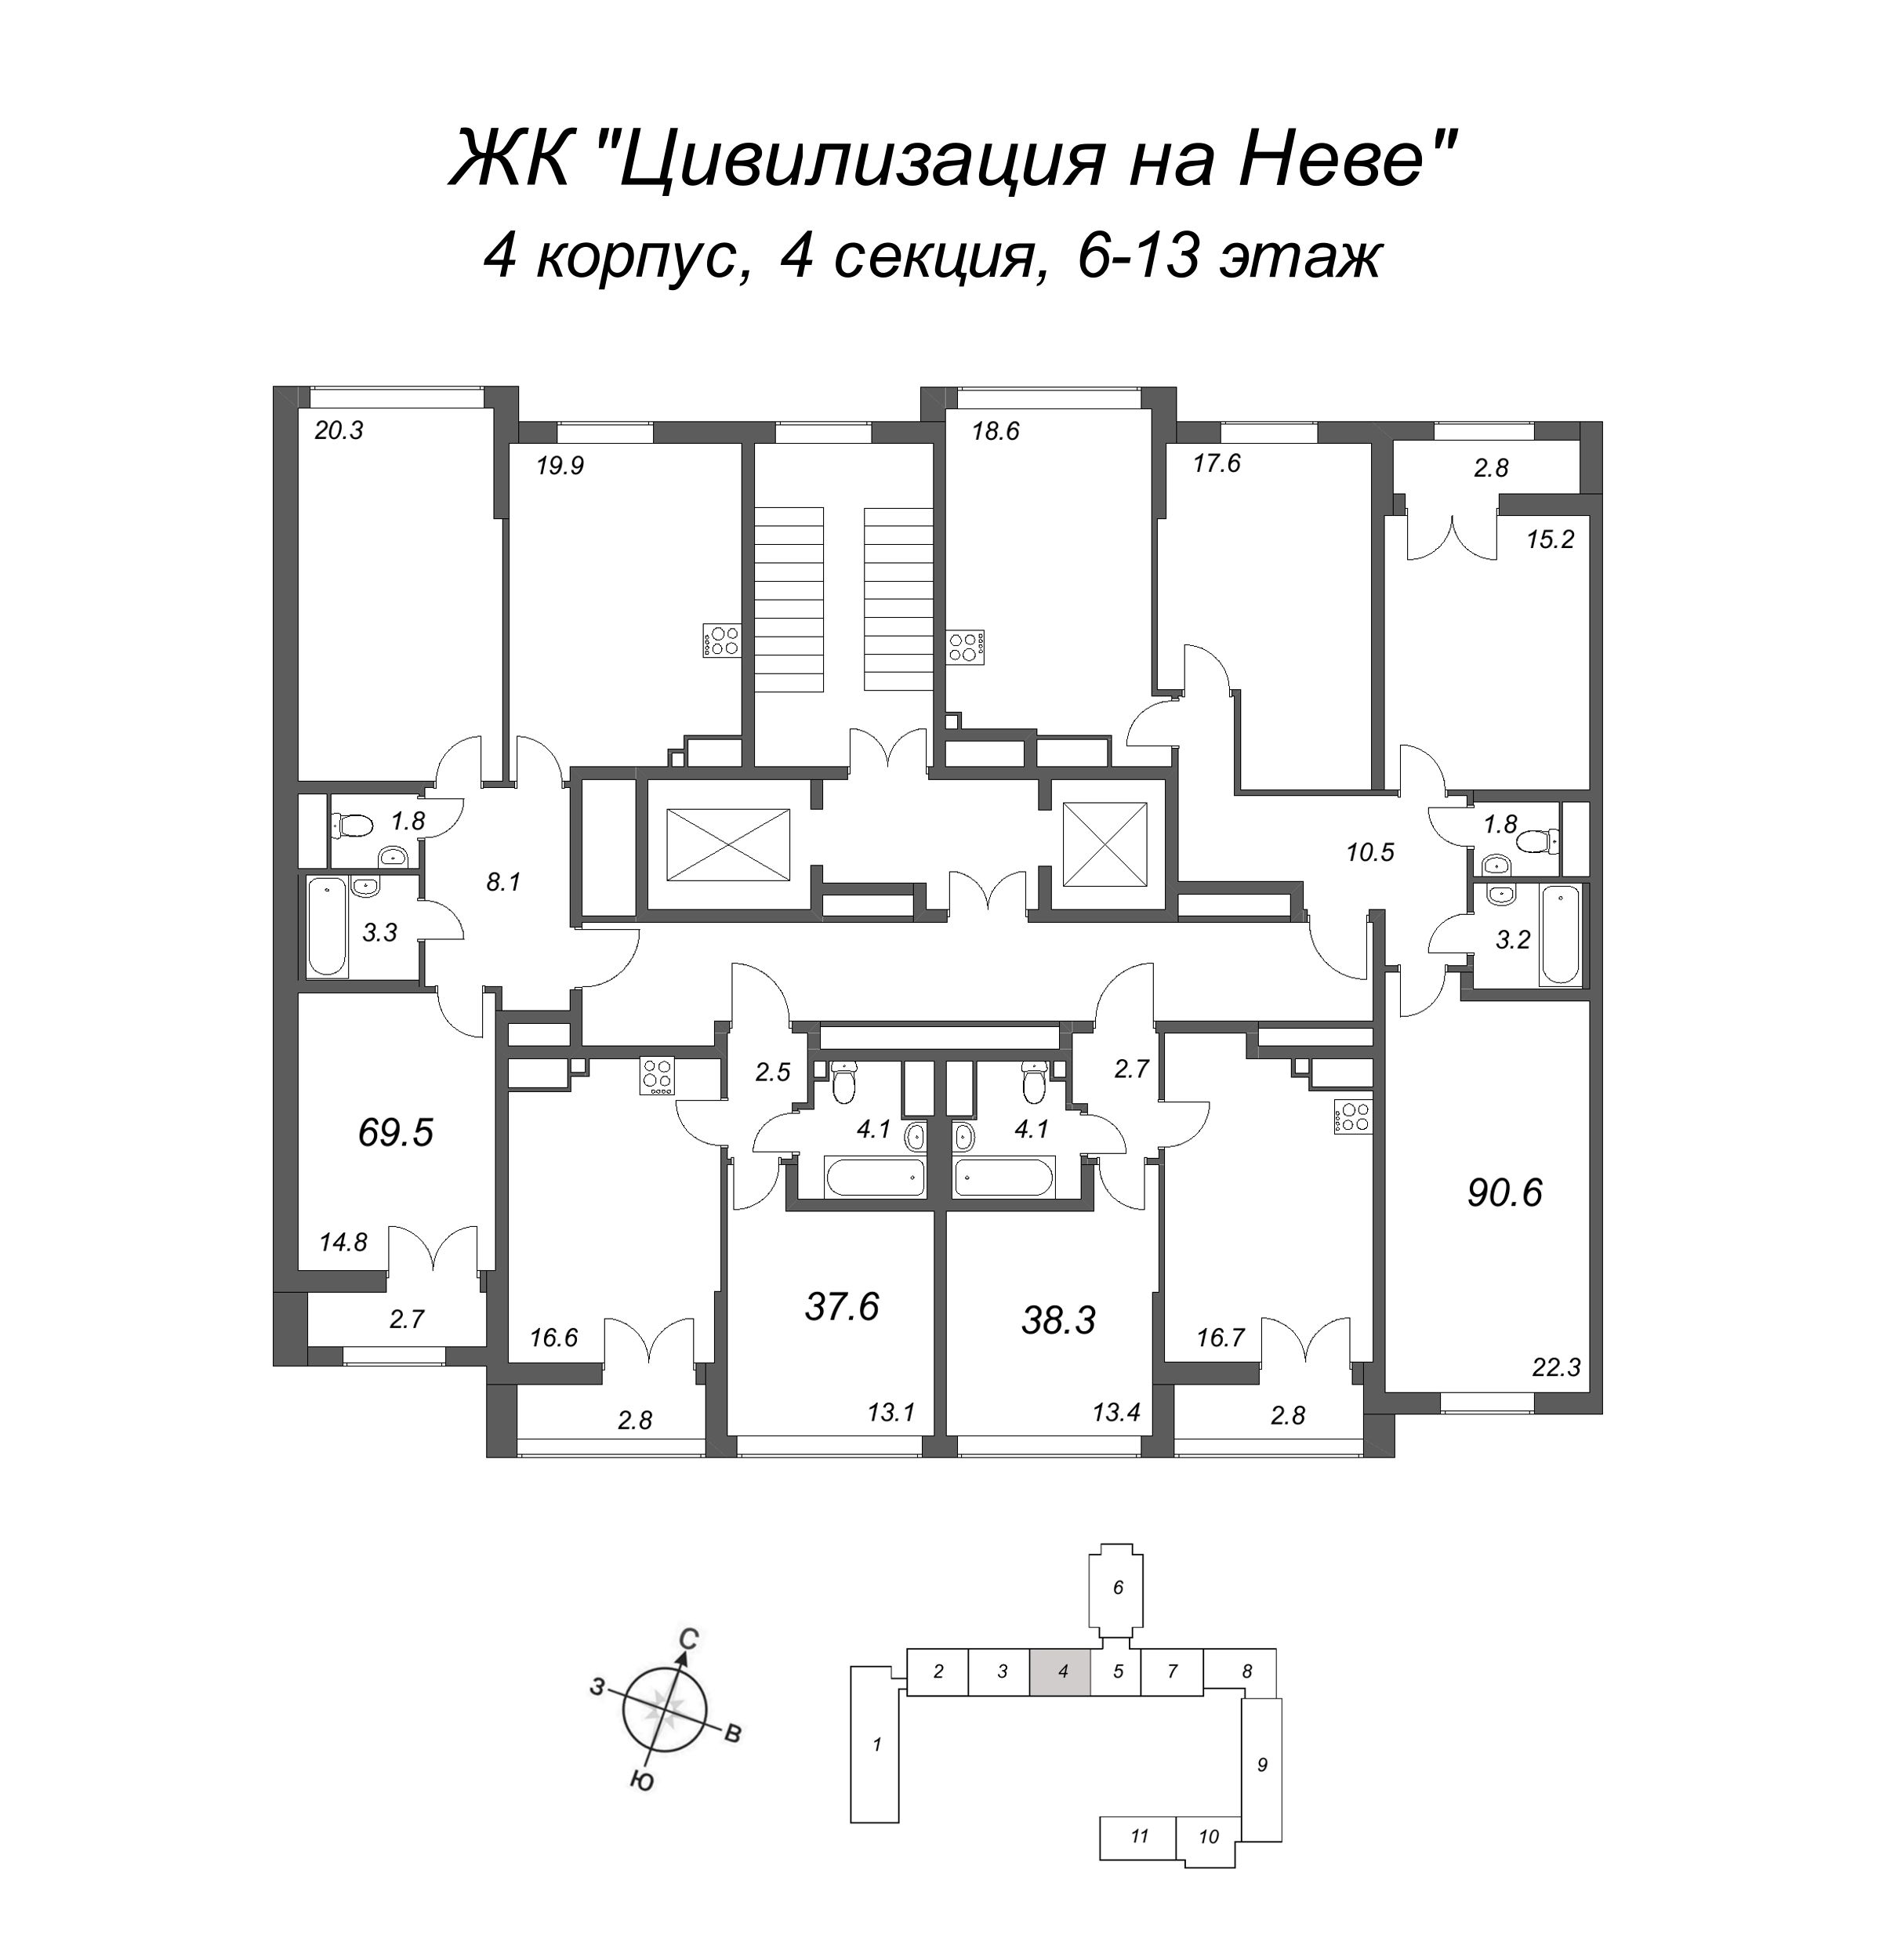 3-комнатная (Евро) квартира, 69.5 м² в ЖК "Цивилизация на Неве" - планировка этажа